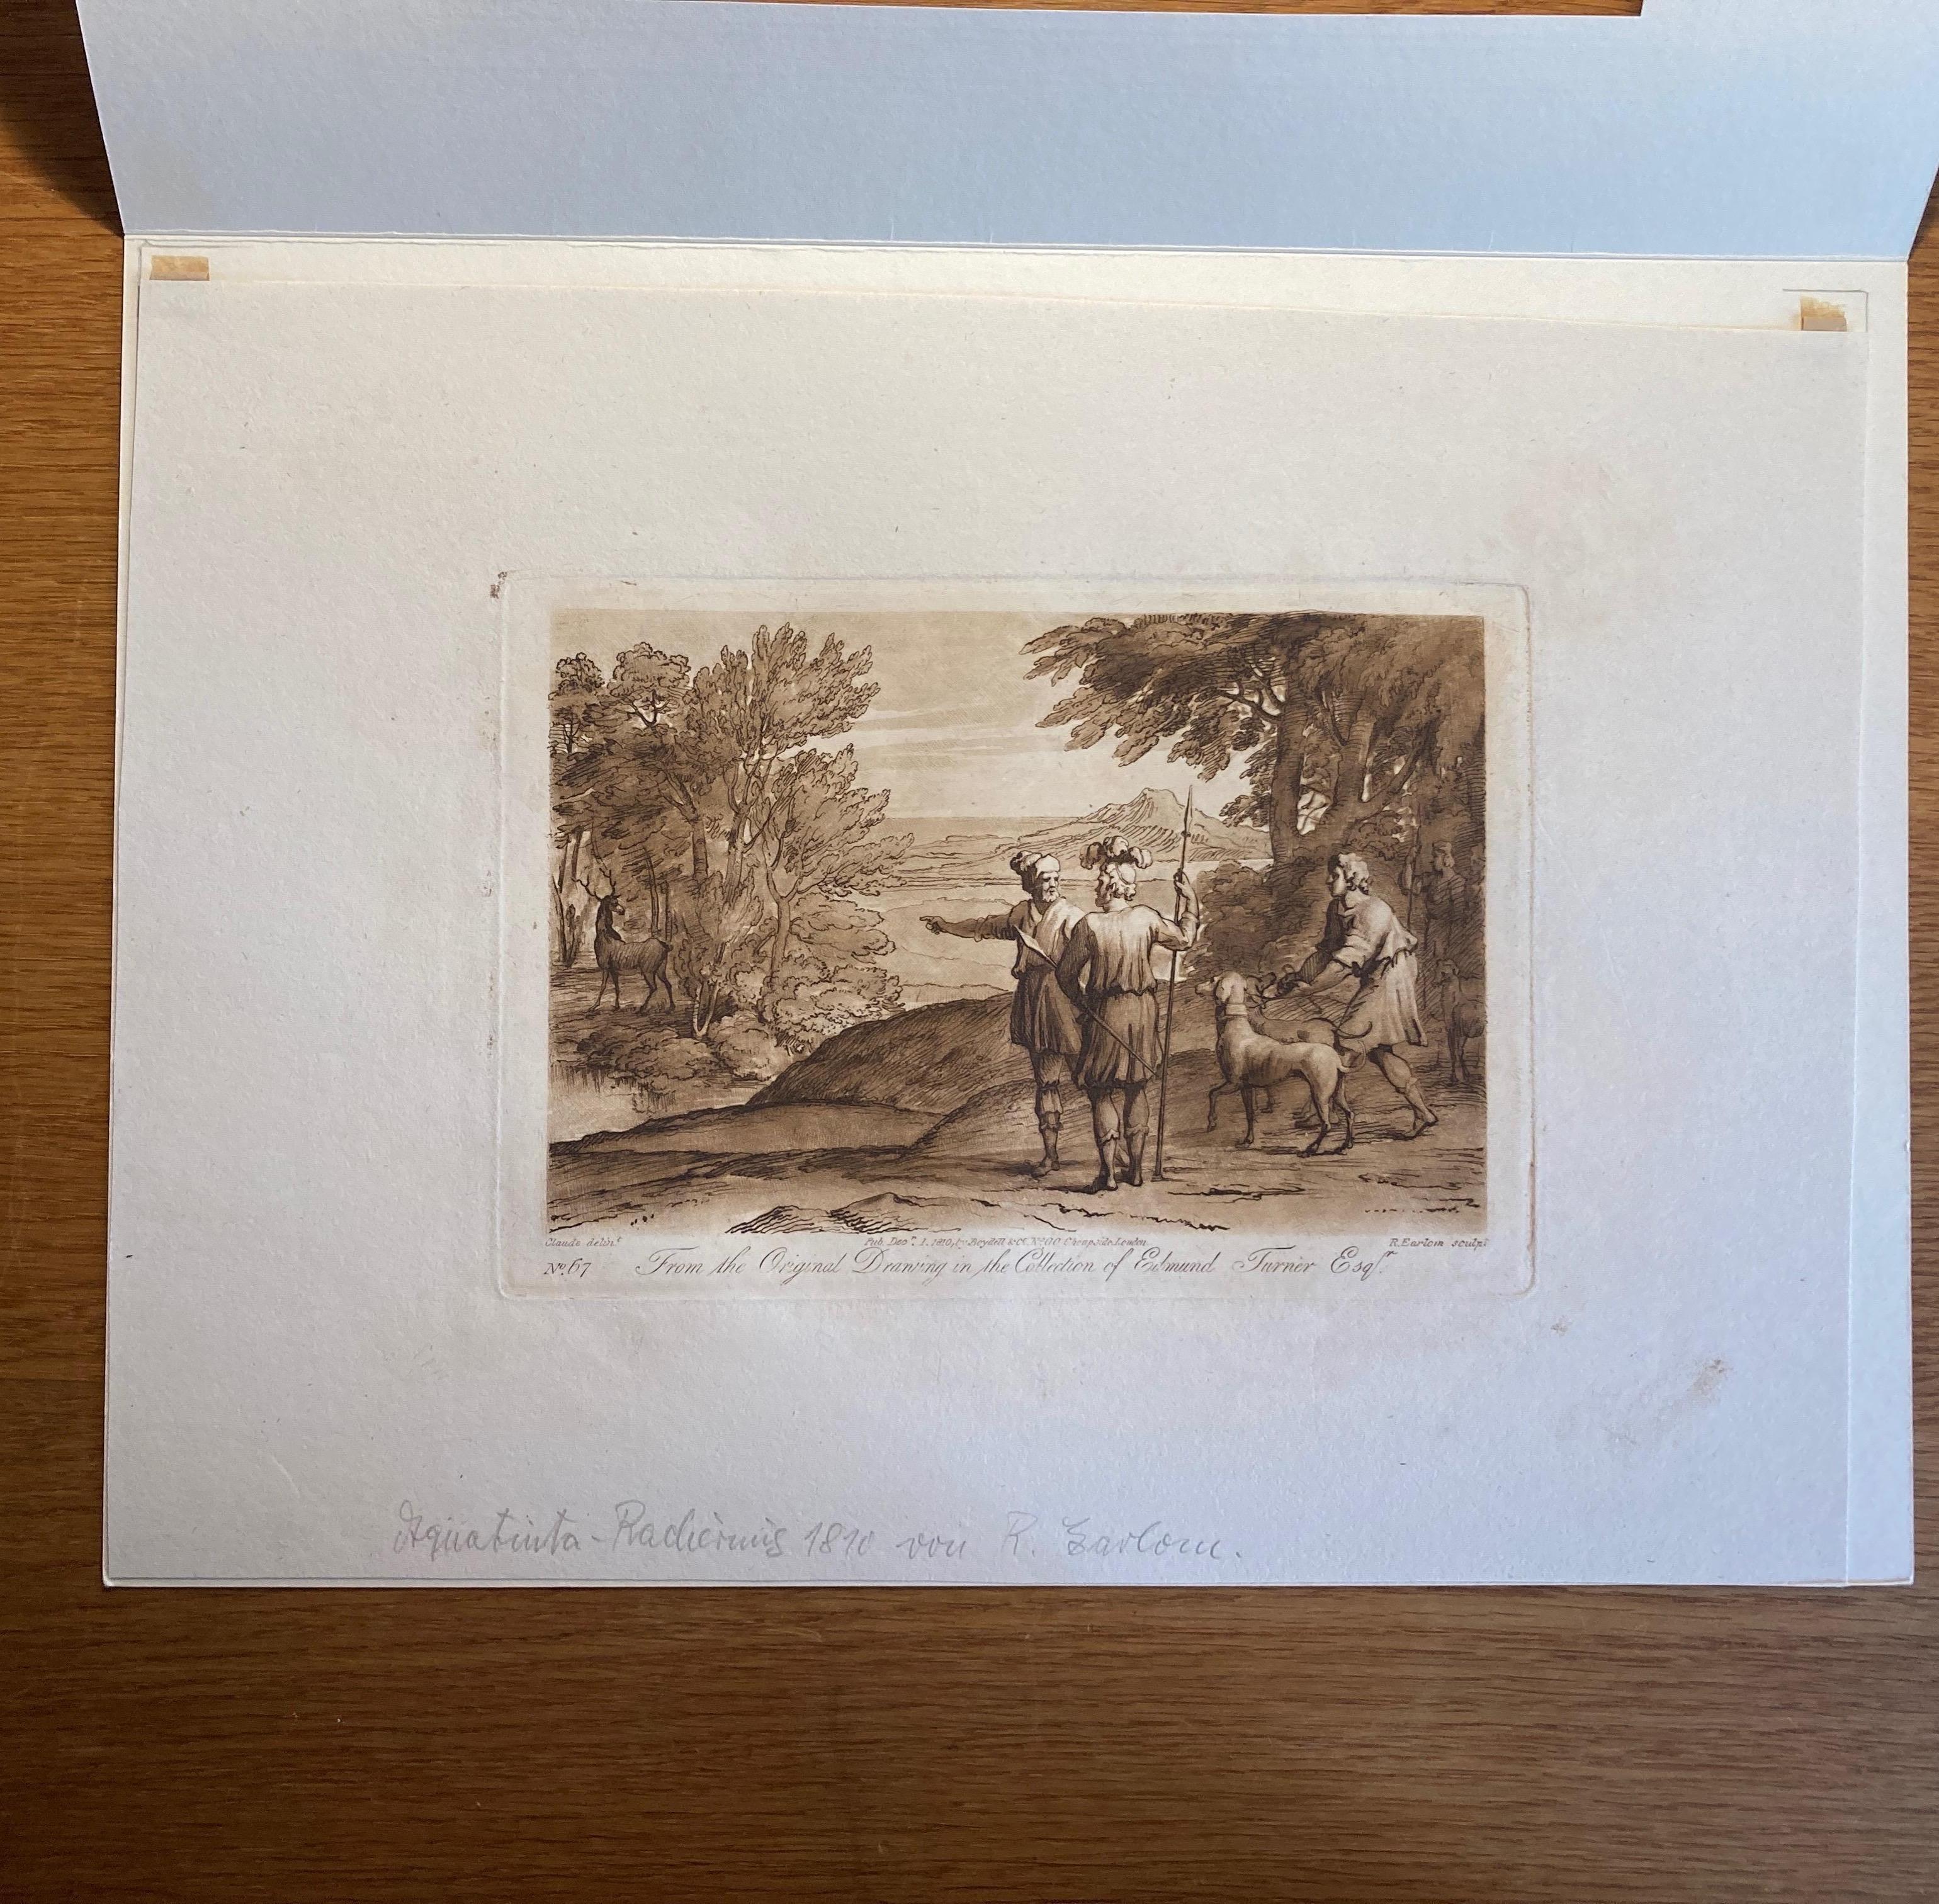 Claude Lorraine Landscape, Richard Earlom Aquatint, 1810 - Brown Landscape Print by (after) Claude Lorrain (Claude Gellée)